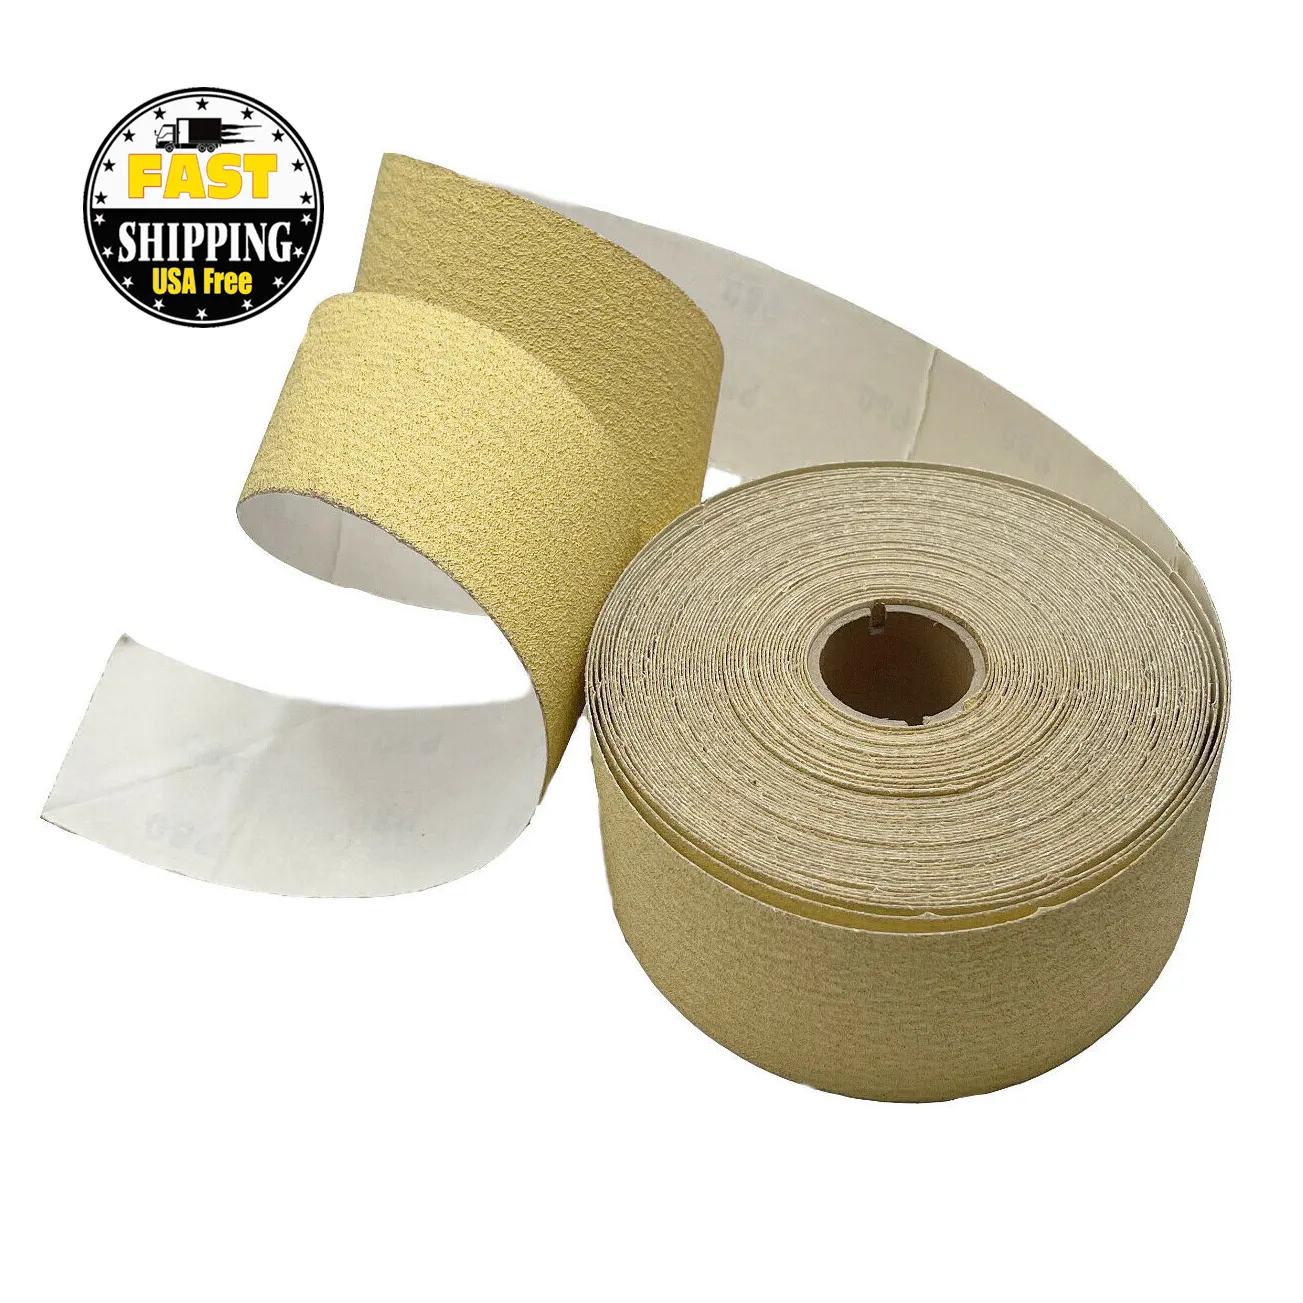 Rollo de papel de lija amarillo recubierto de óxido de aluminio, abrasivo, para pulir, 25 yardas, 320 # PSA, envío en almacén de EE. UU. Dentro de las 24h